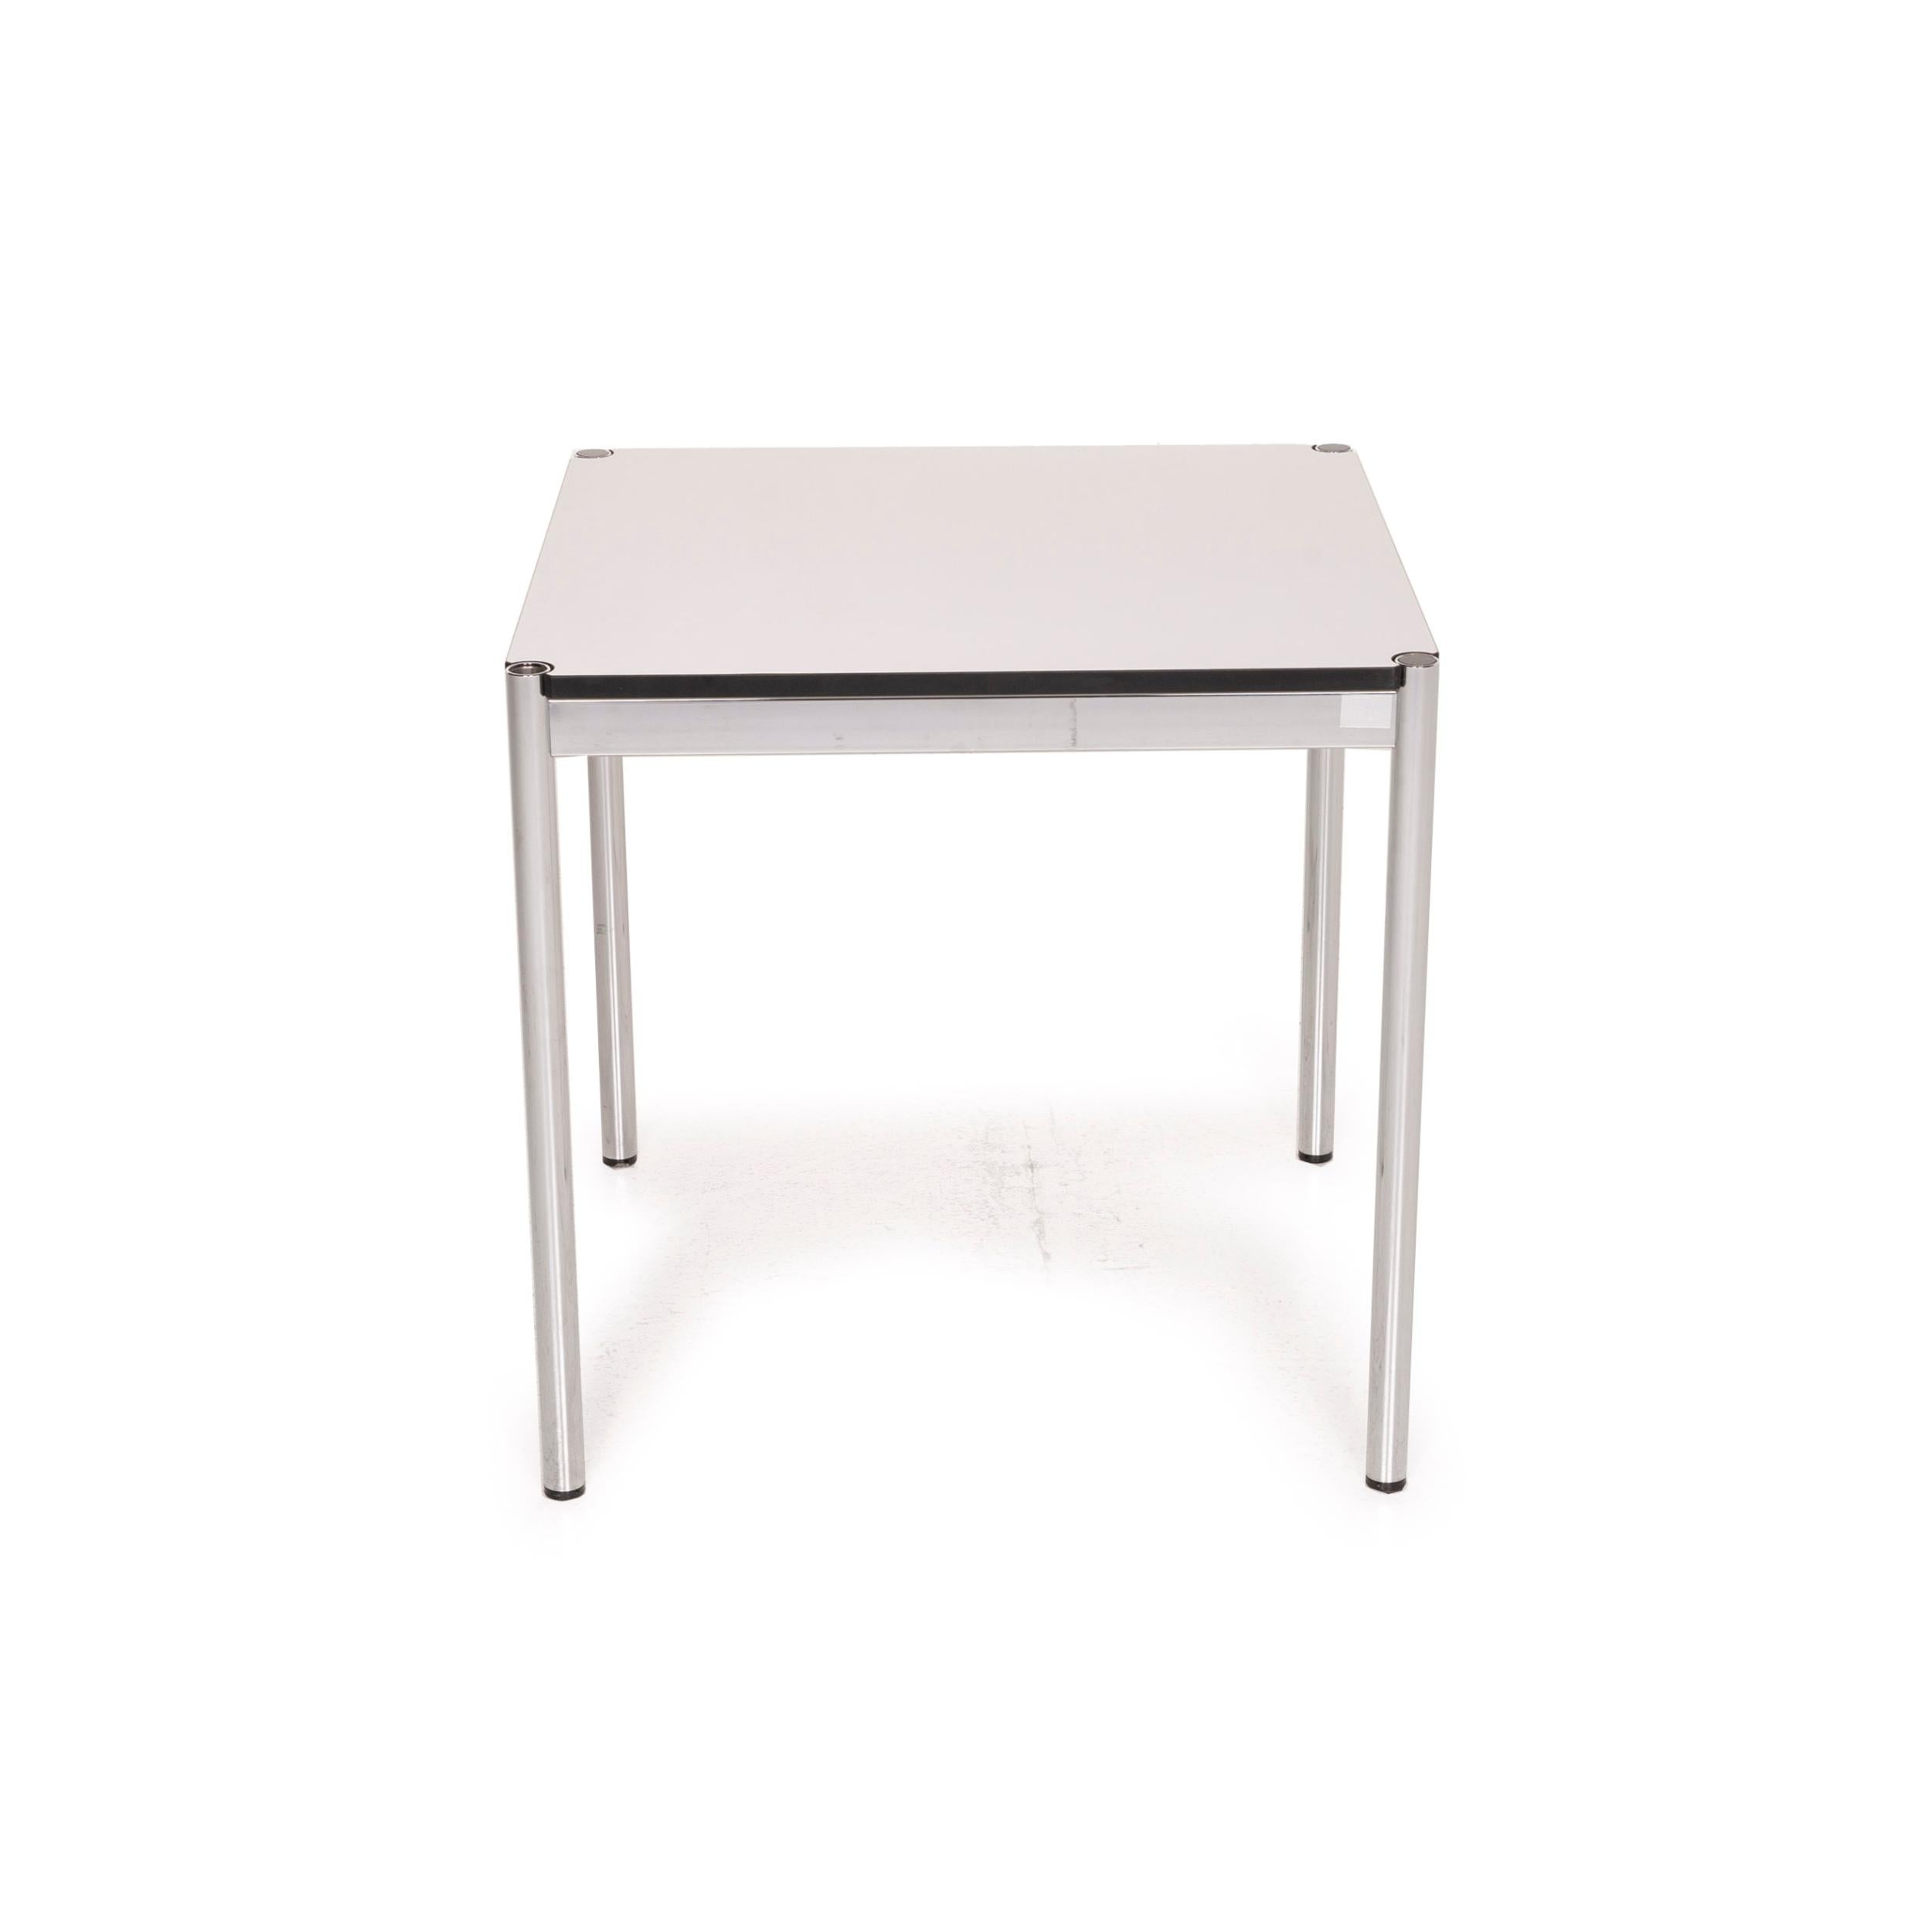 USM Haller Metal Table White Desk Chrome 1